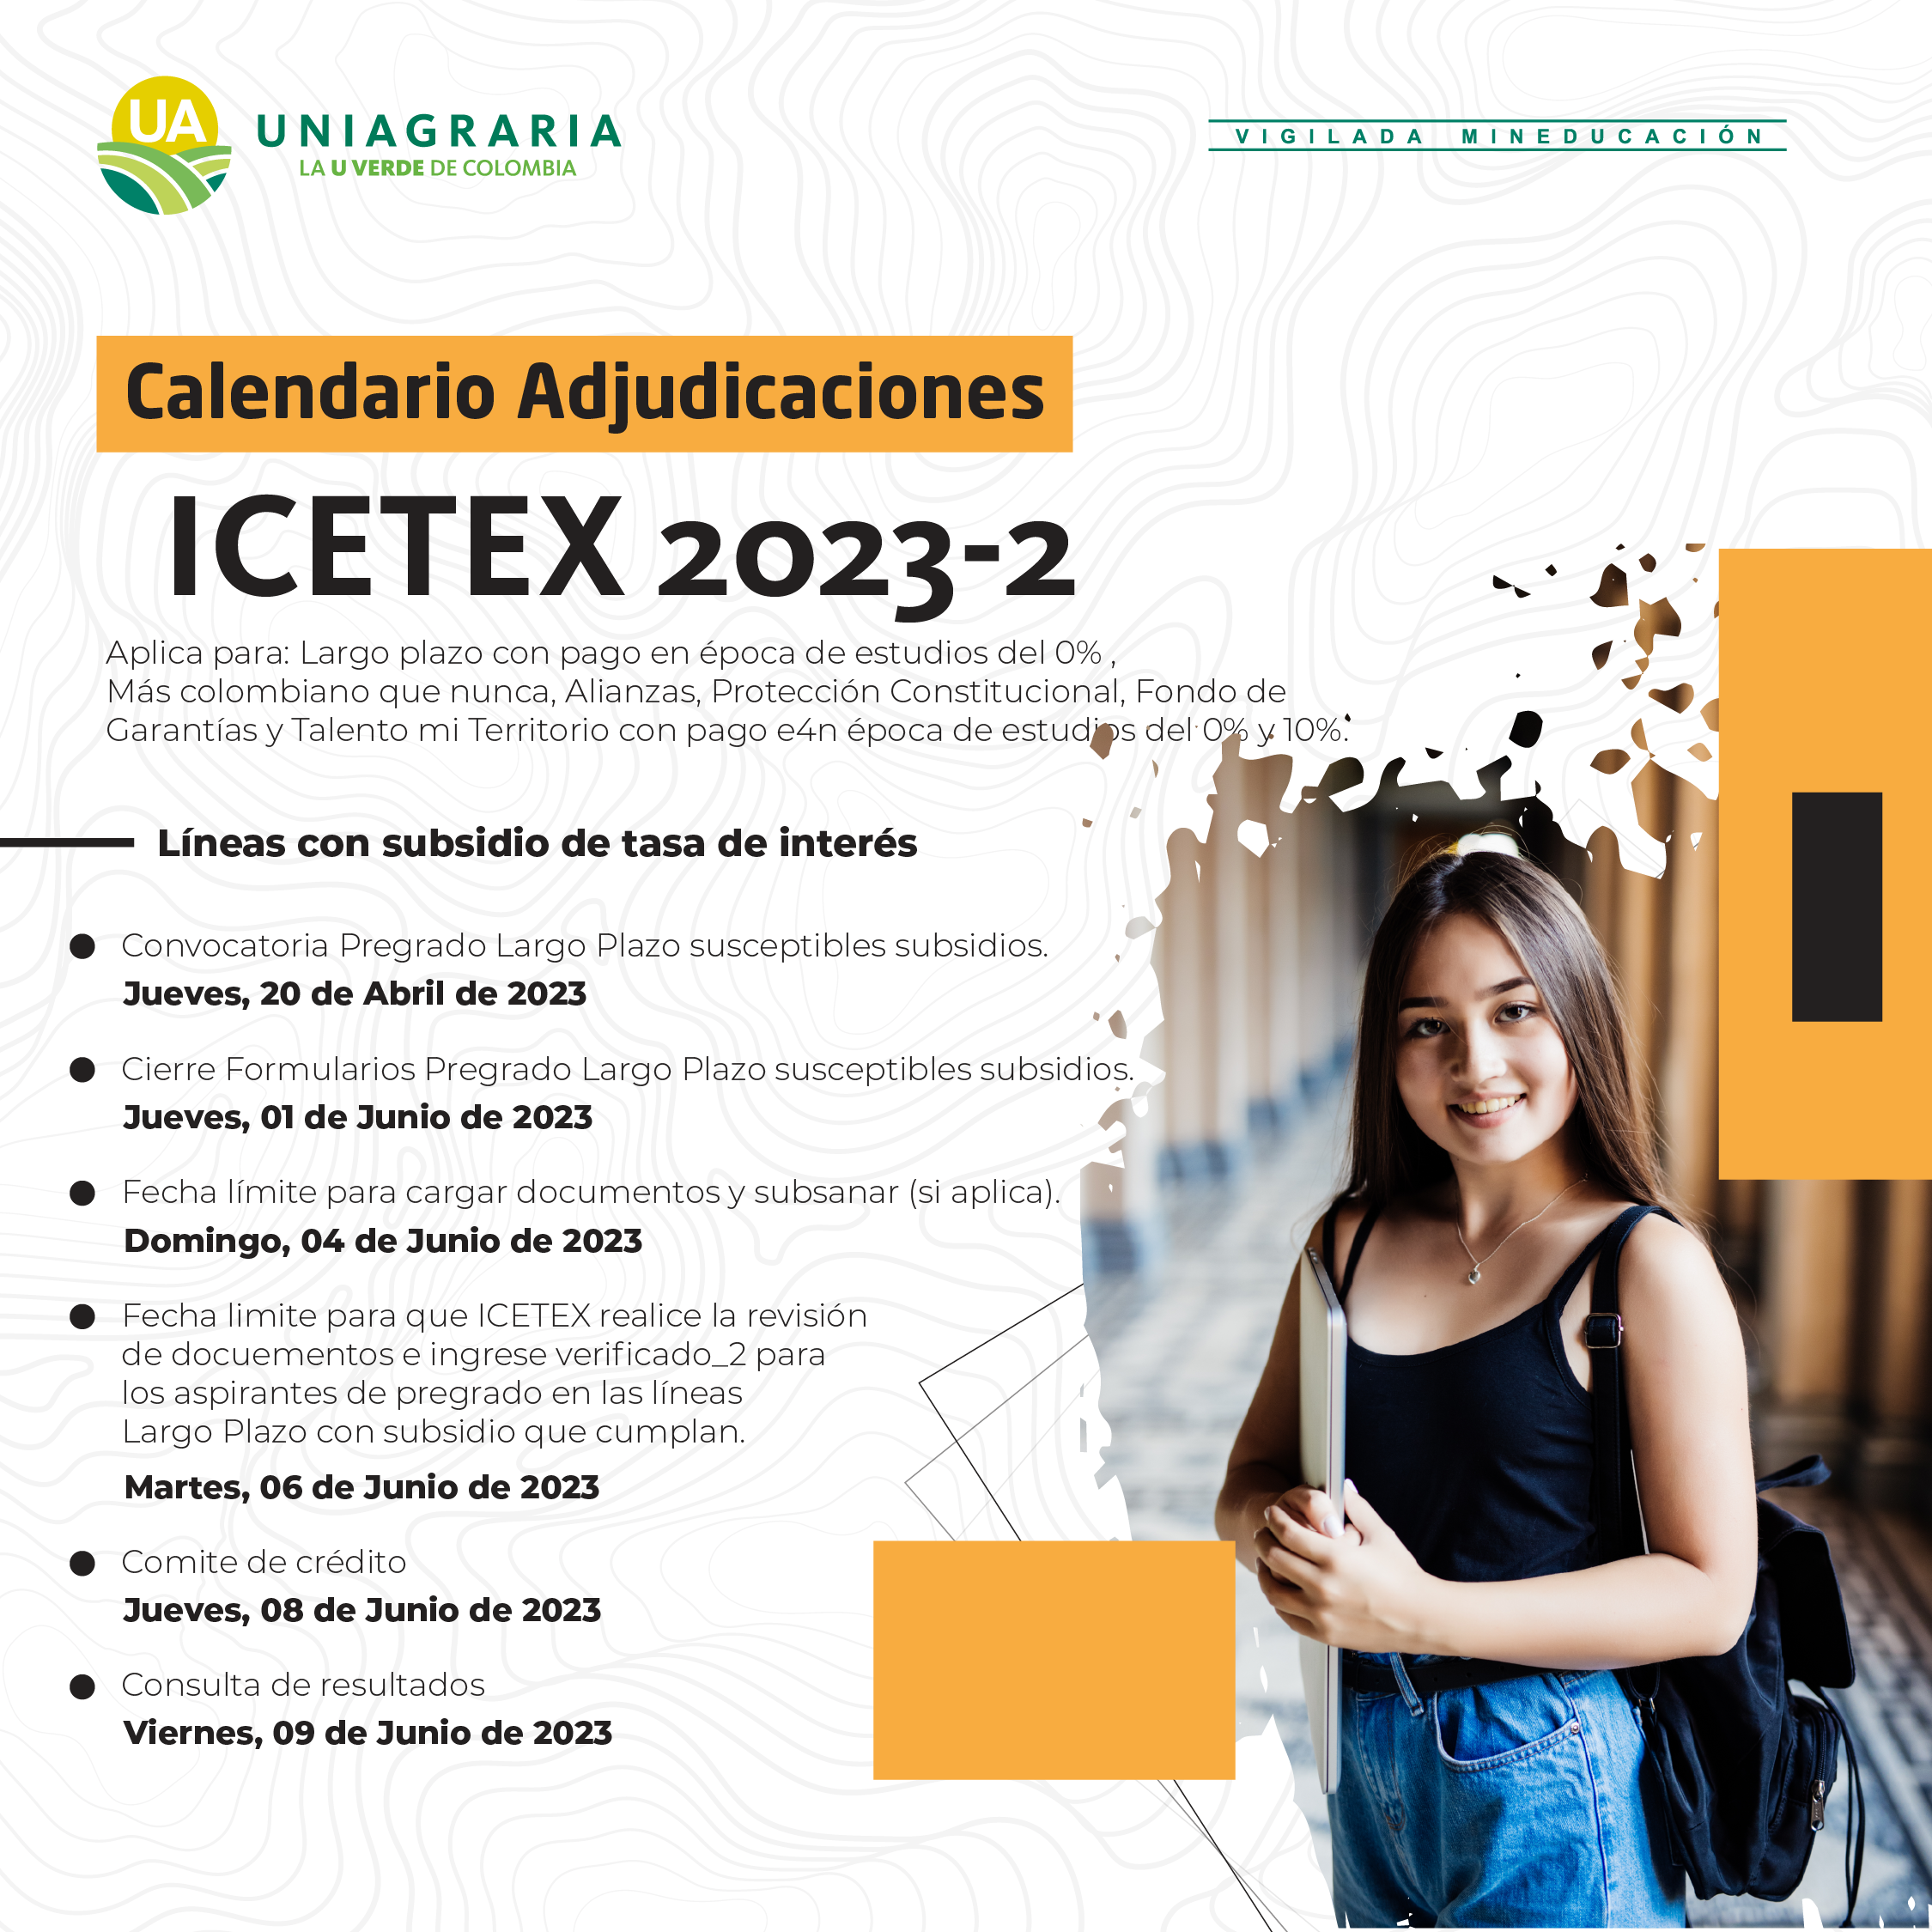 Calendario adjudicaciones ICETEX 2023-2